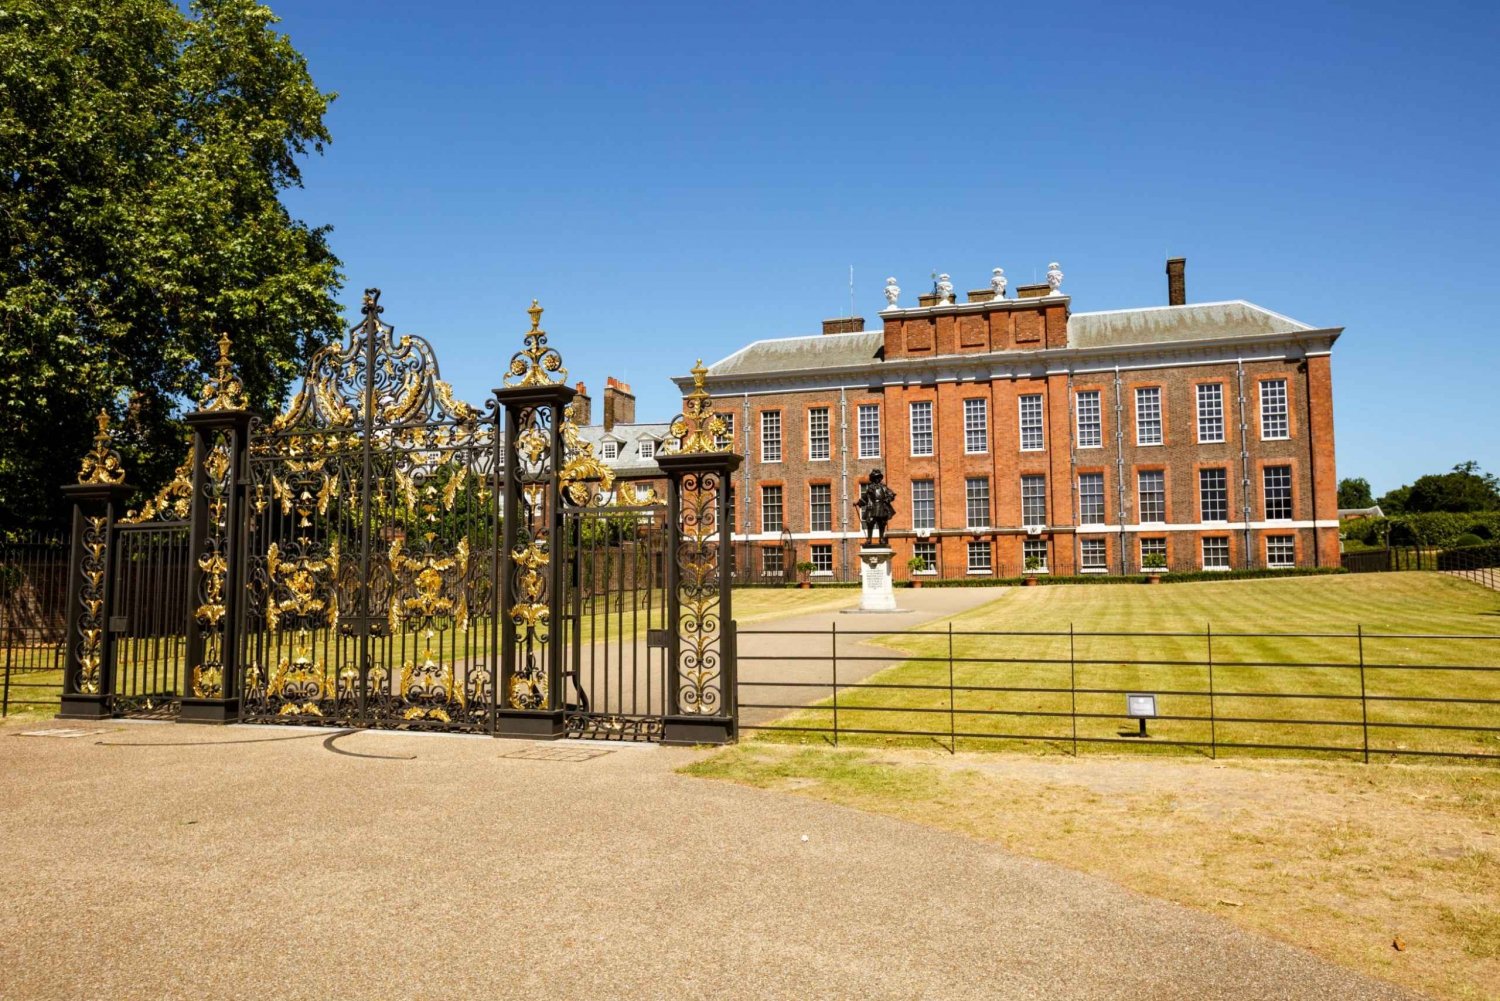 Lontoo: Kensingtonin palatsi: Kensingtonin palatsin kiertoajelu pääsyliput